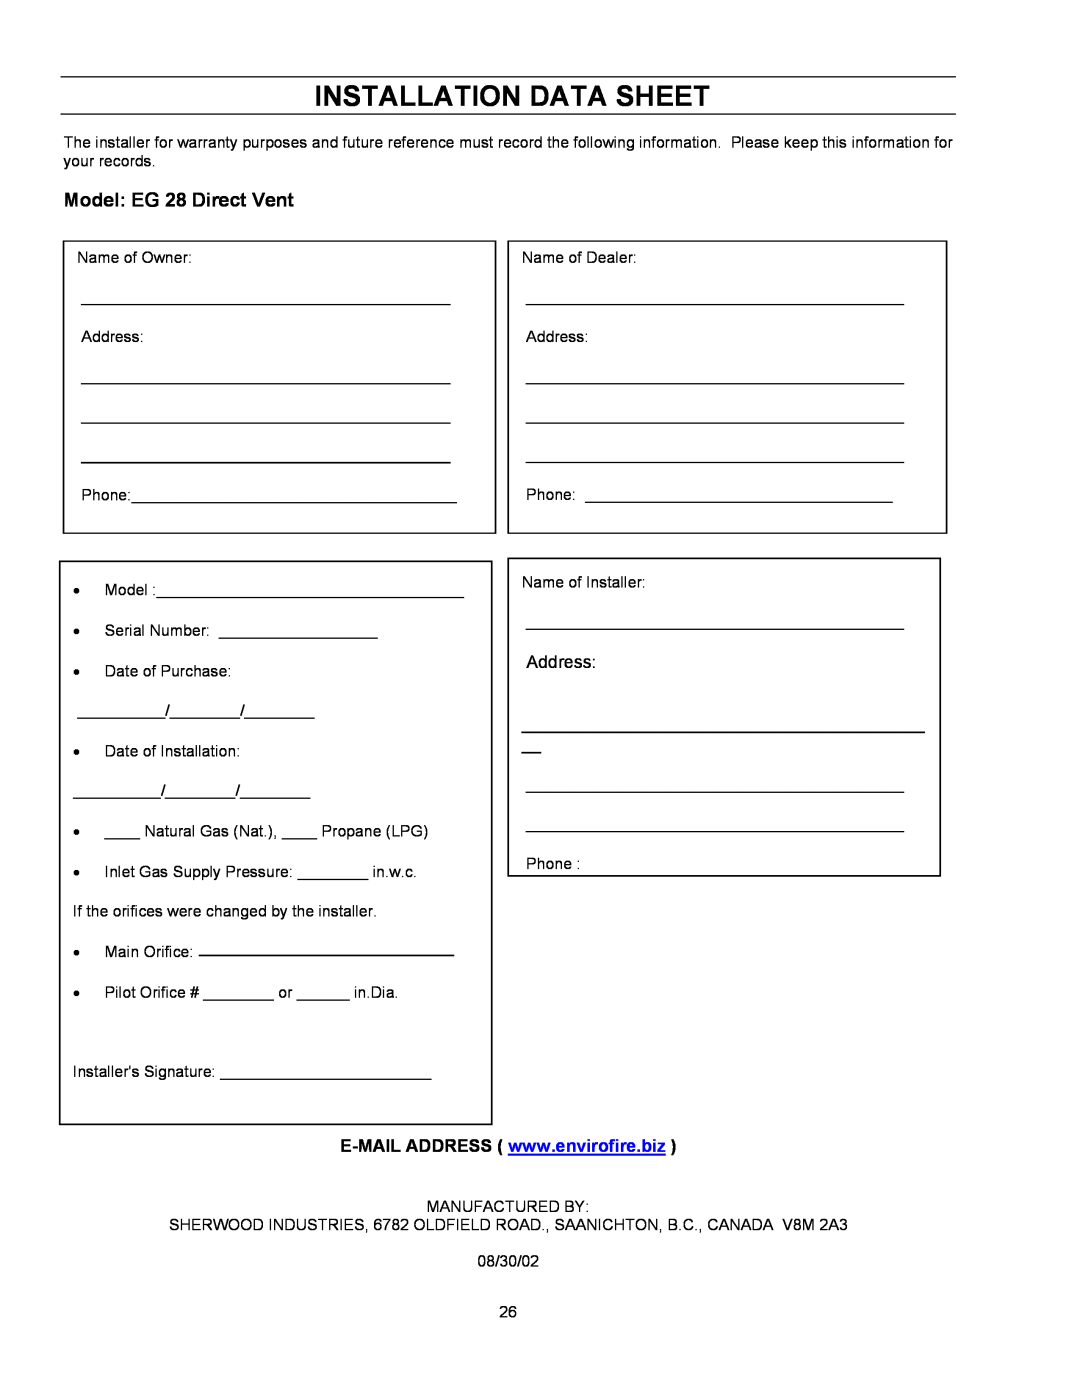 Enviro owner manual Installation Data Sheet, Model EG 28 Direct Vent 